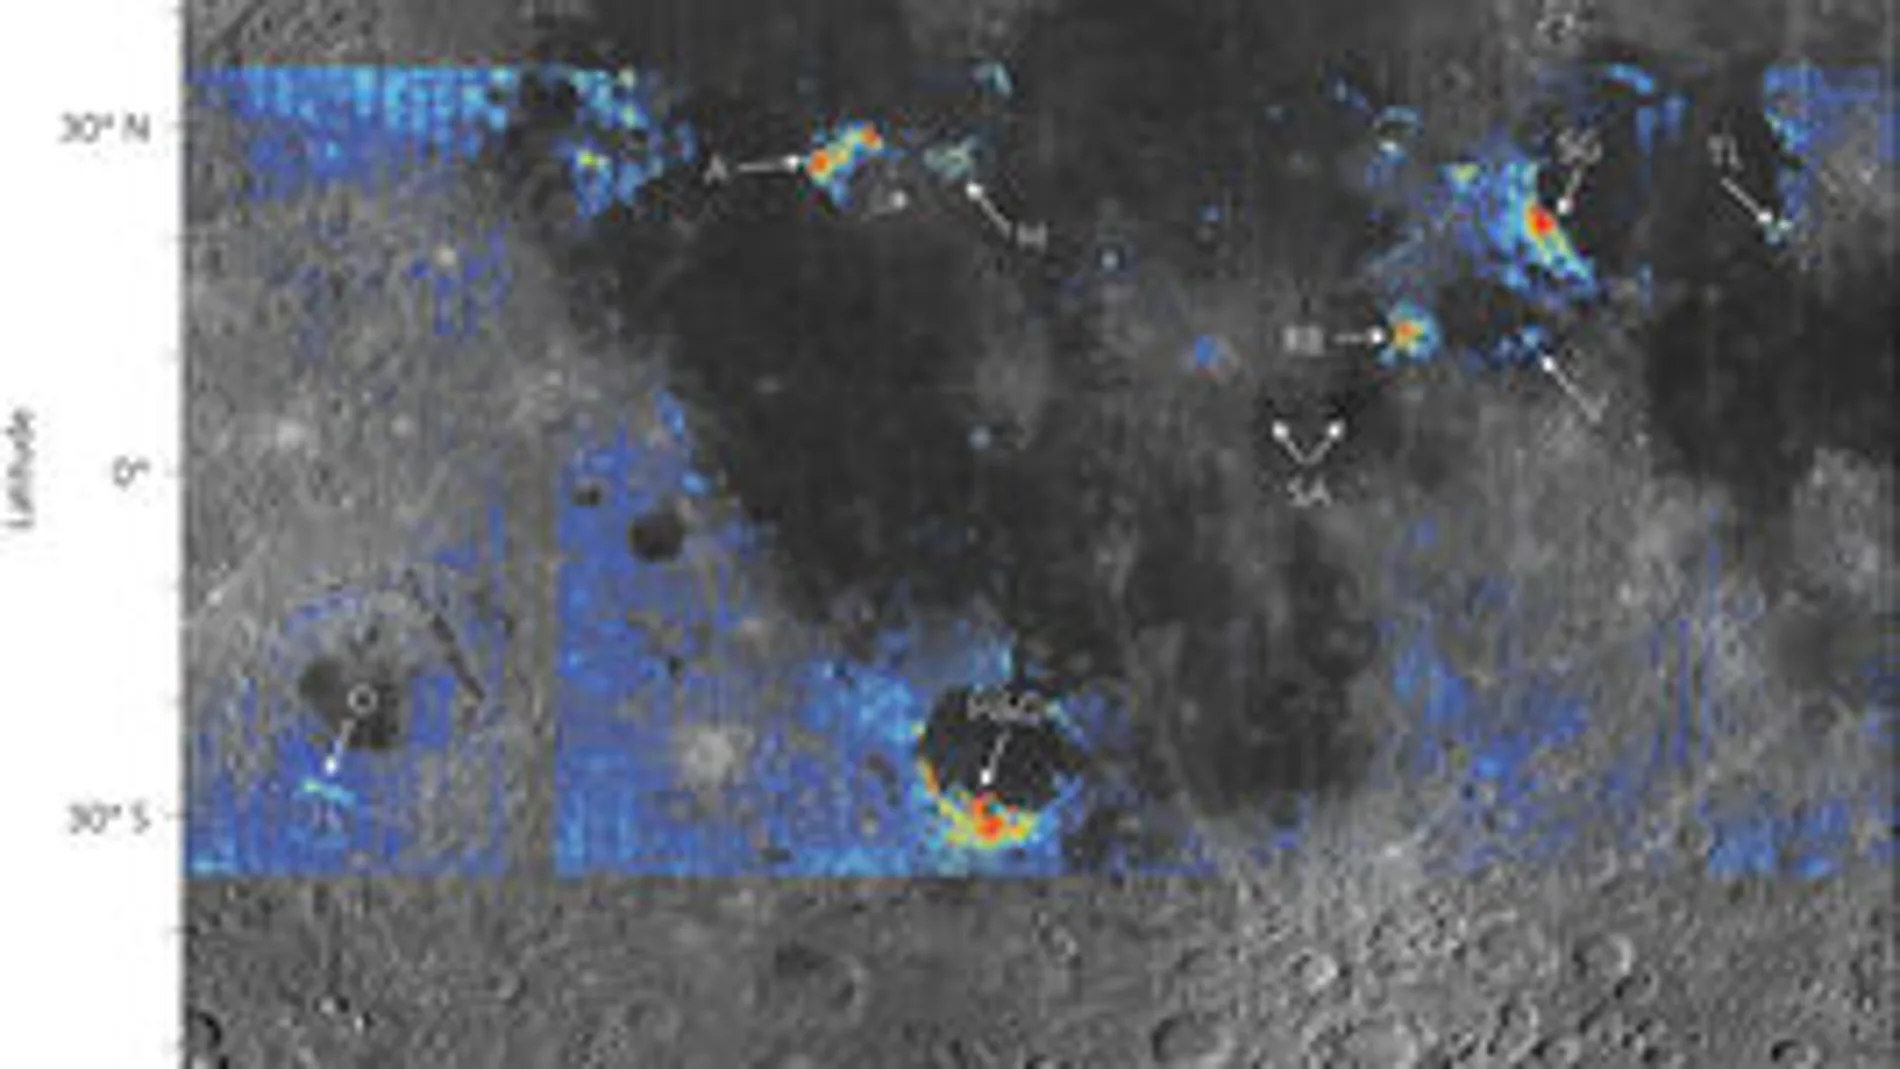 Una de las imágenes captadas por satélites e incorporadas al artículo